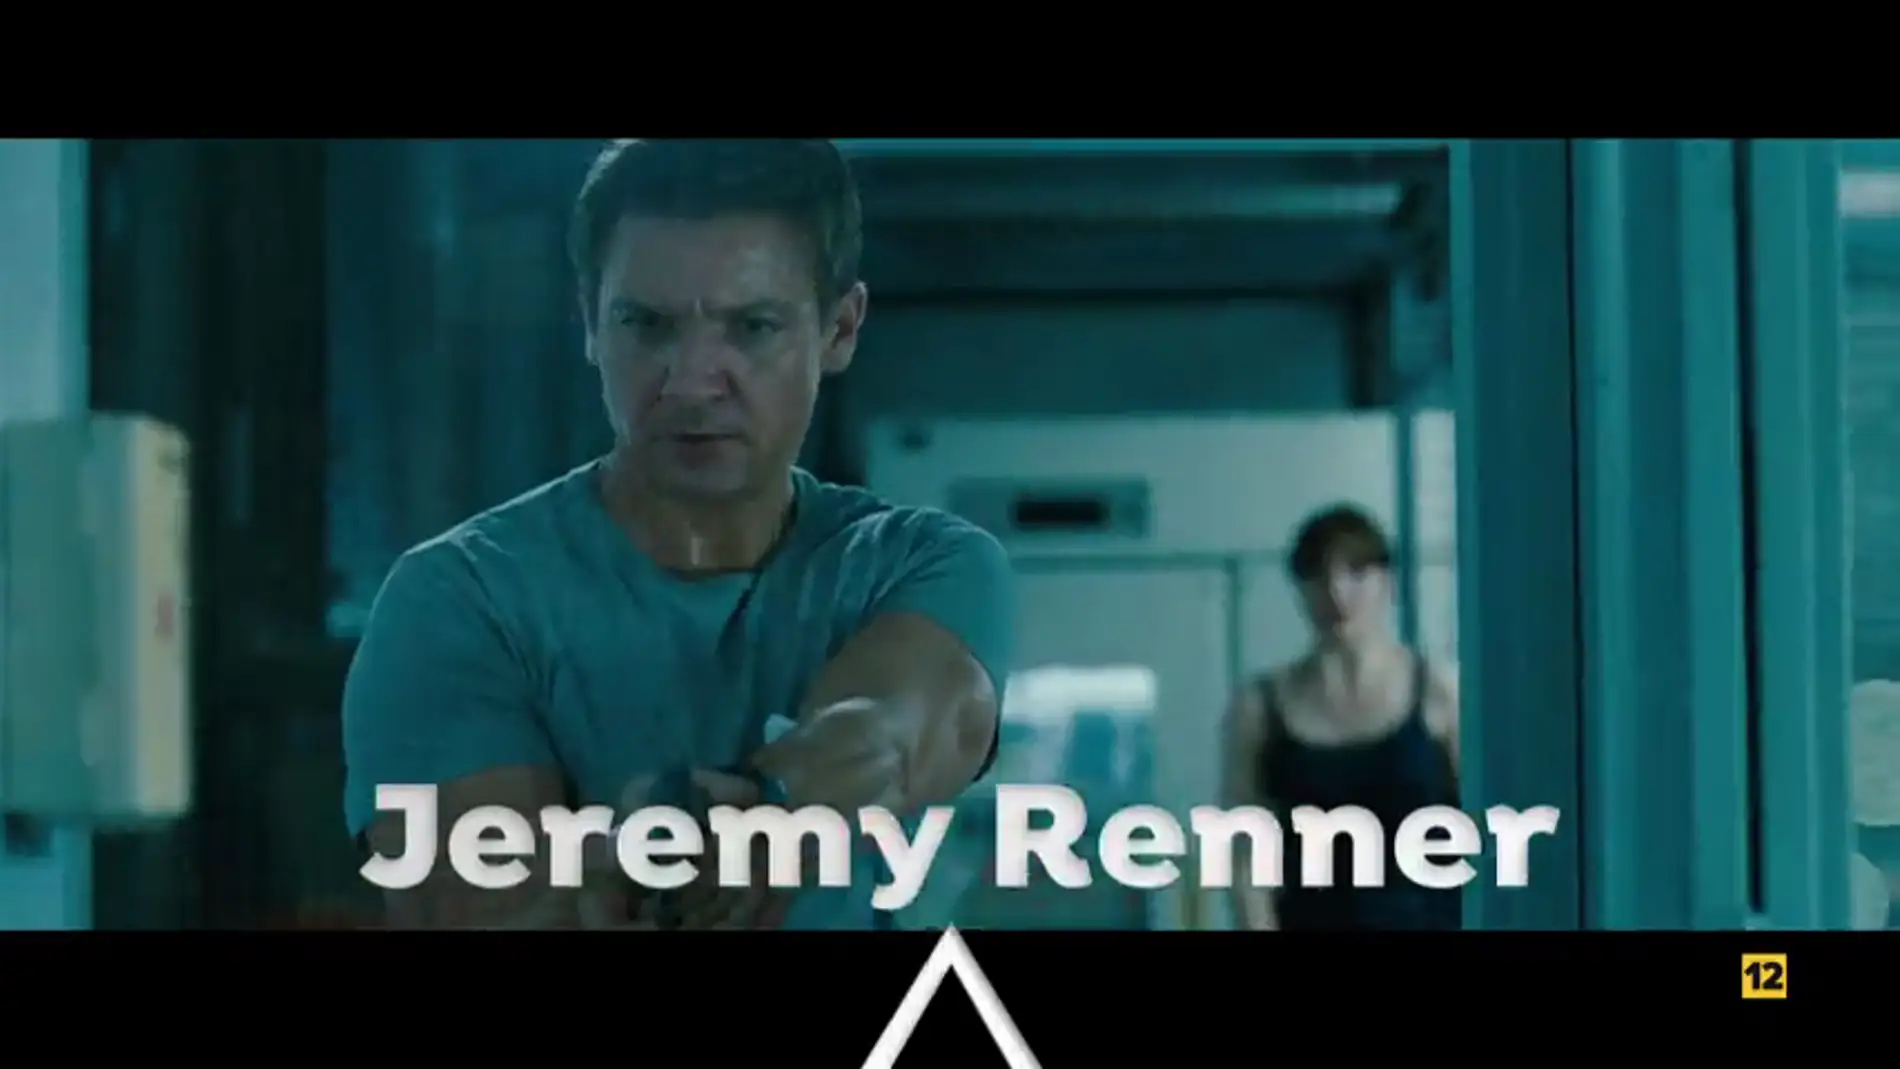 Cine de acción en El Peliculón con 'El legado de Bourne' 